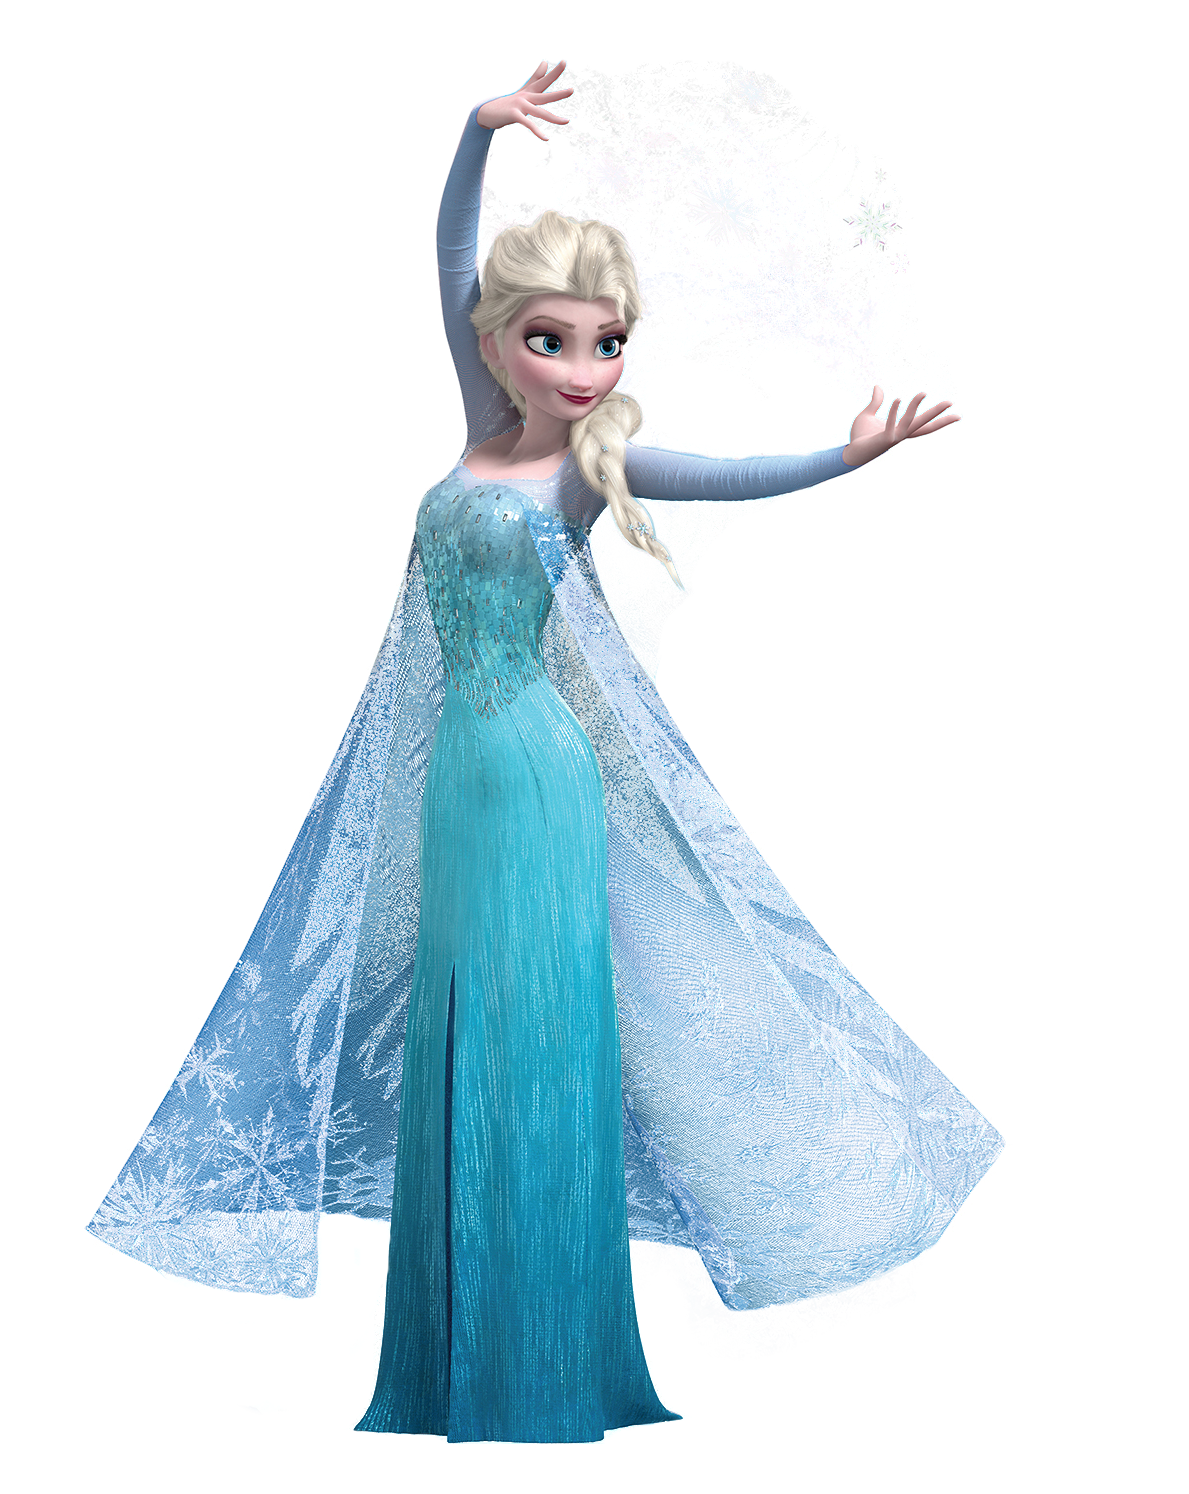 Download Frozen Elsa Download Free Image HQ PNG Image | FreePNGImg